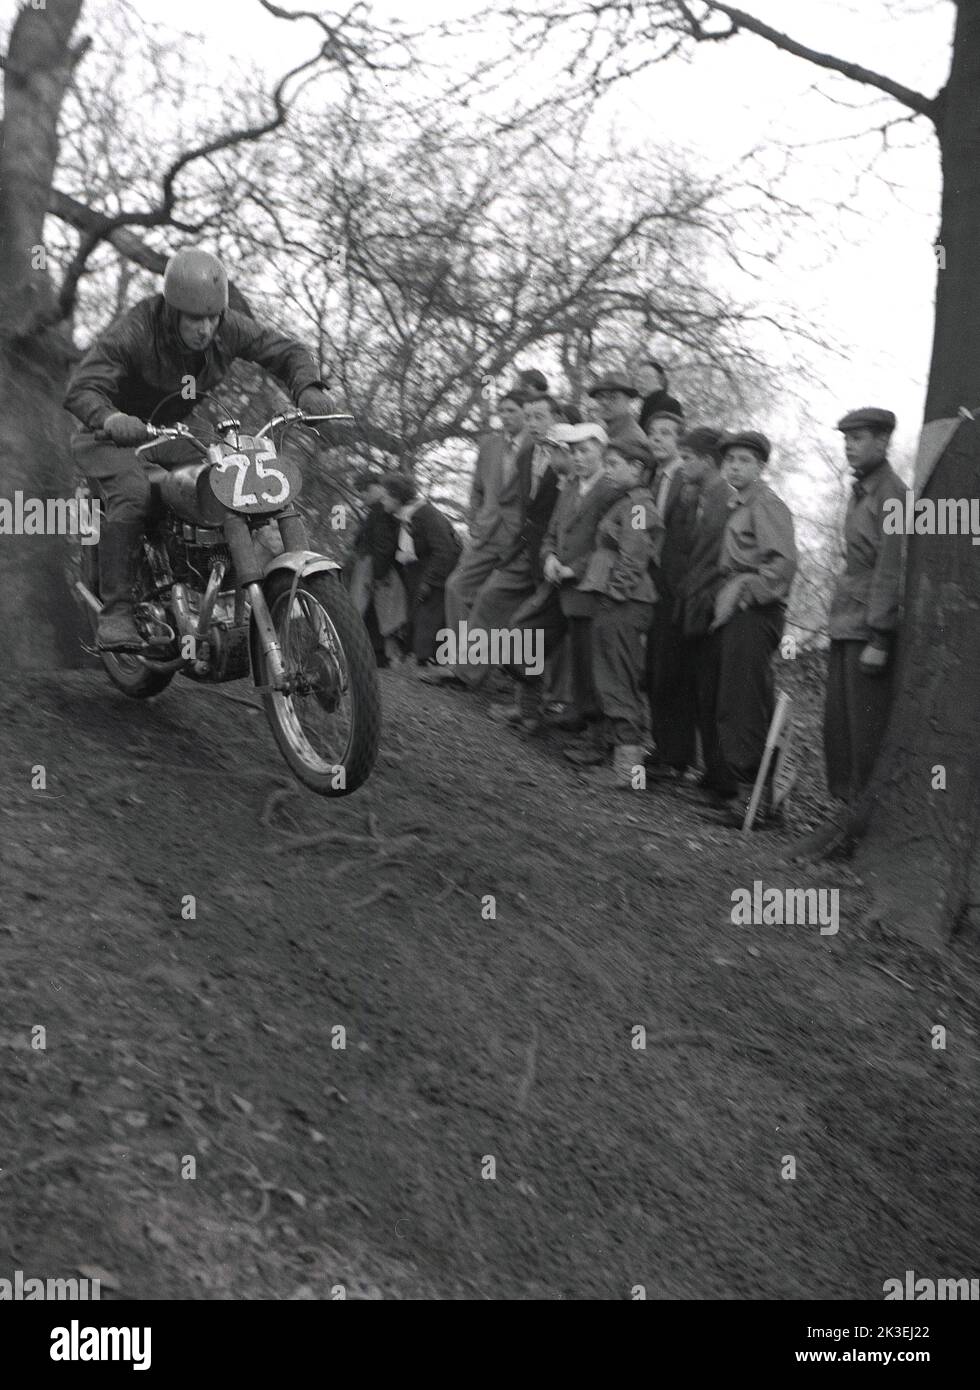 1954, histórico, en el exterior, en un terreno escarpado en un bosque, espectadores viendo a un competidor montando una motocicleta de la época, en una carrera de lucha o prueba en Seacroft, Leeds, Inglaterra, Reino Unido, organizada por el West Leeds Motor Club. Foto de stock